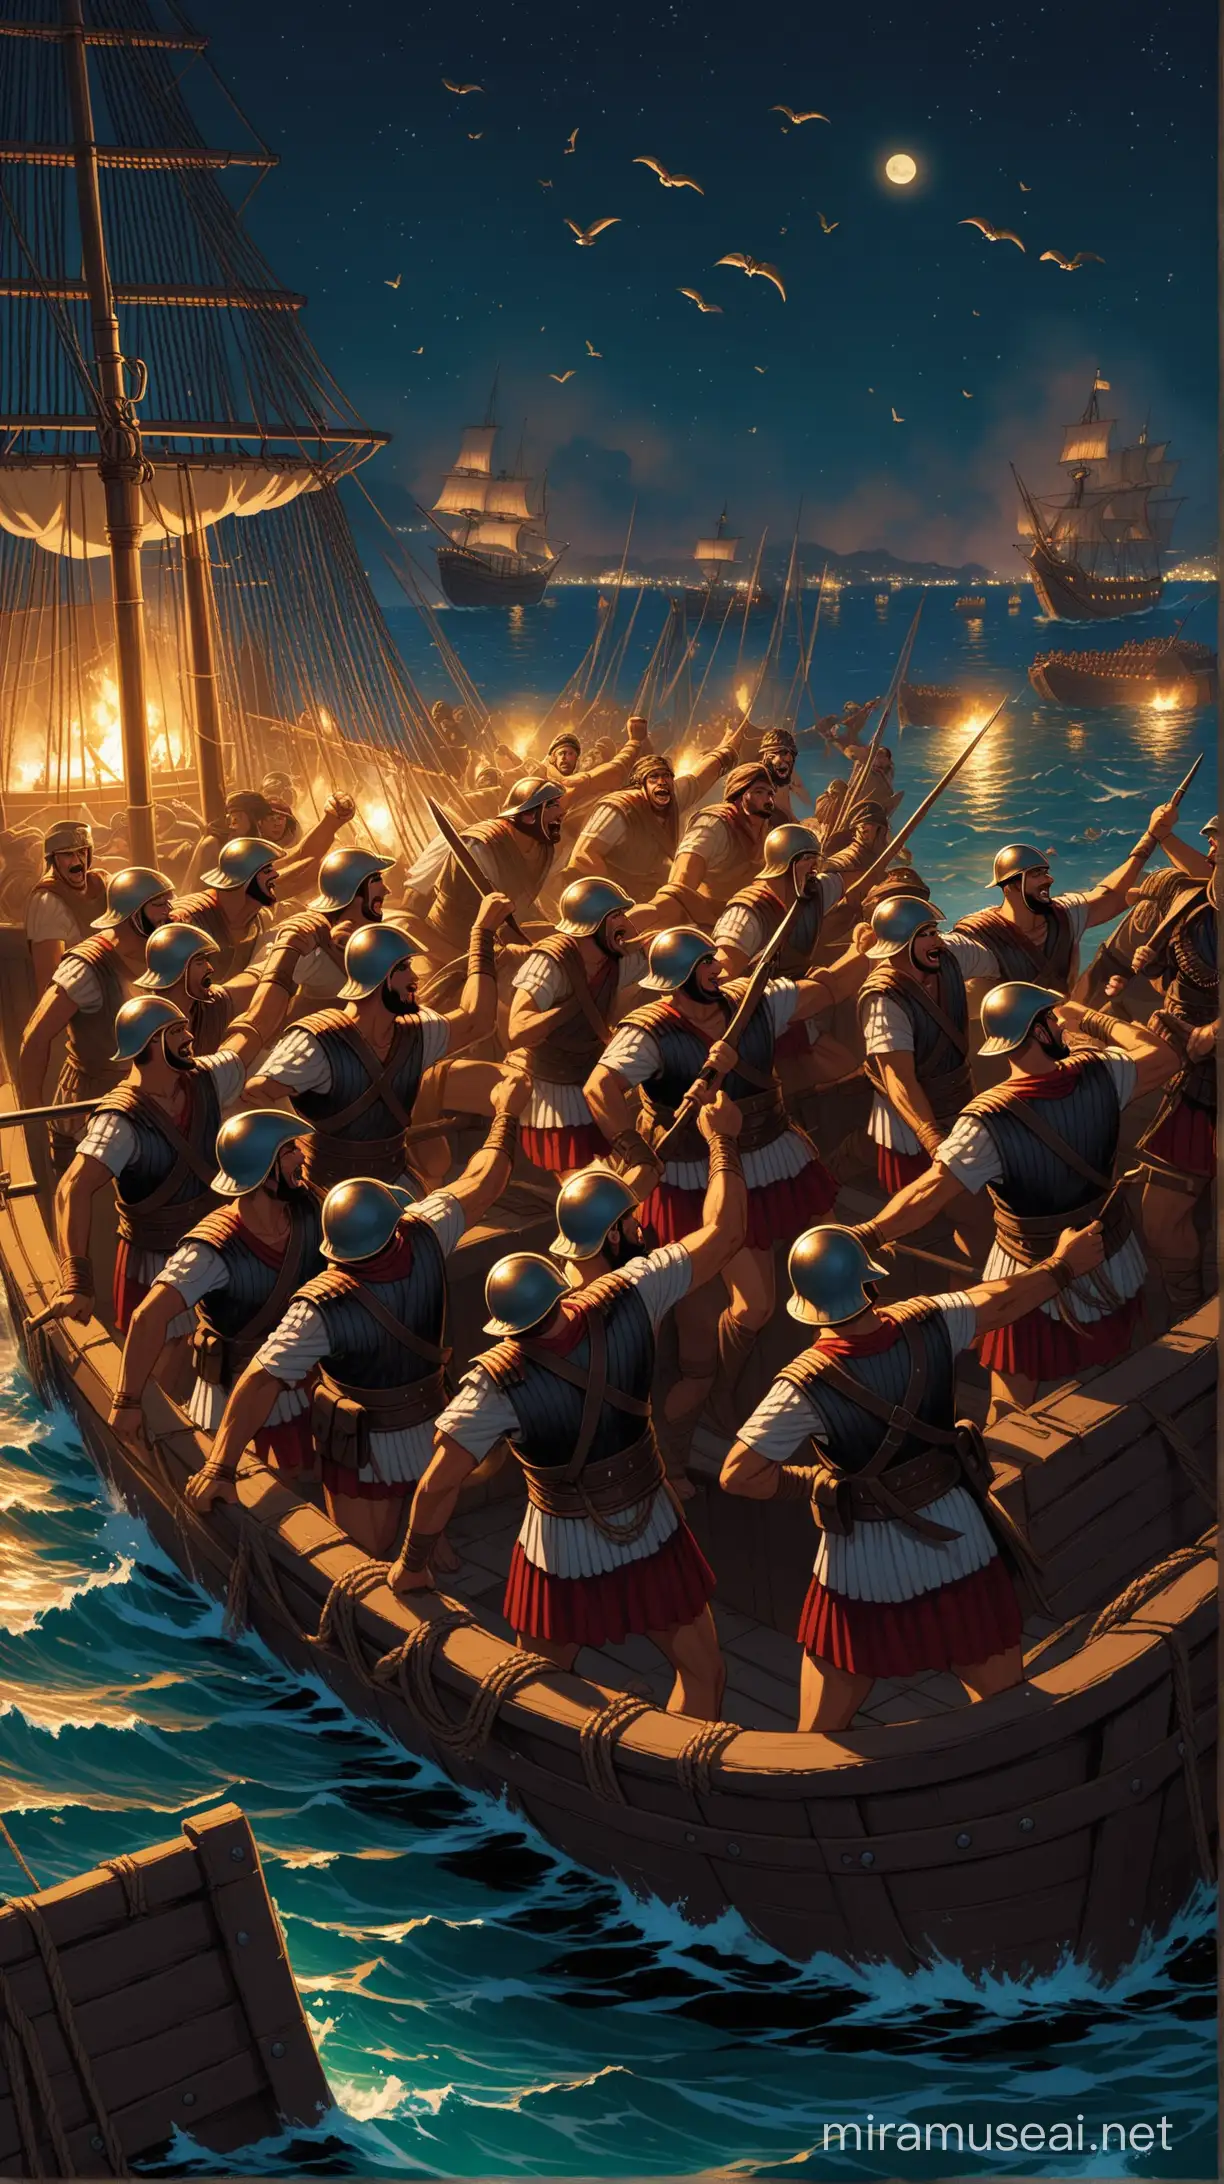 Triumphant Roman Sailors Capture Pirates at Night